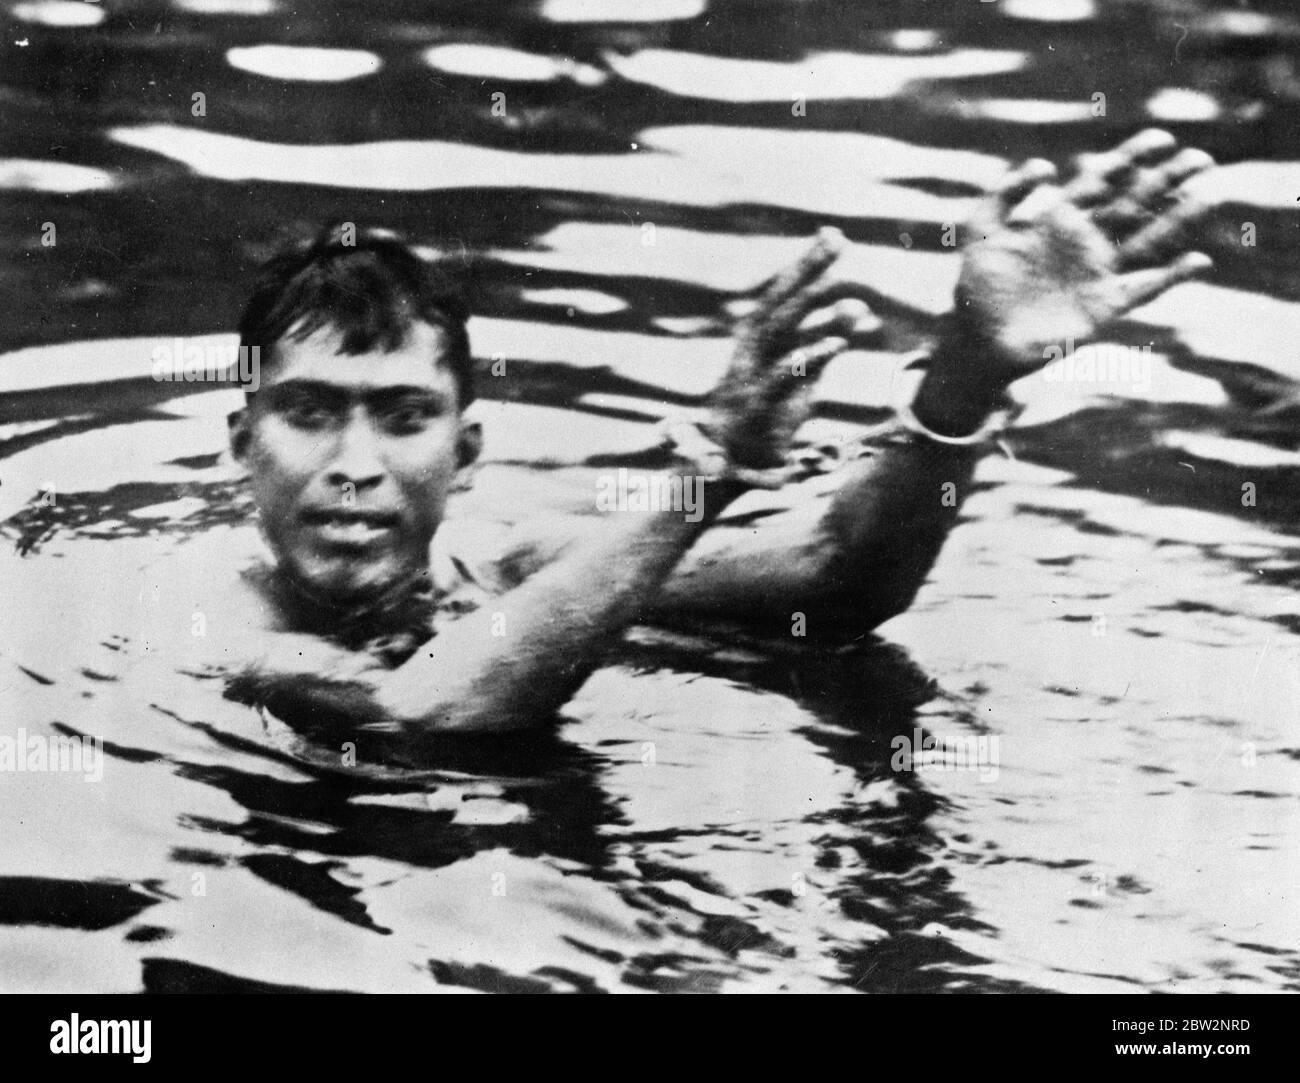 Vingt-quatre heures avec les mains manacled sets nouveau recrod . M. P K Ghosh de Calcutta , qui a déjà acquis une réputation de natation d'endurance, a établi un nouveau record mondial en nageant dans le réservoir Cornwallis , Madra , pendant vingt-quatre heures avec ses deux mains menottées . Sa performance a été surveillée par une foule de vingt mille personnes . Photos , M. P K Ghosh montrant ses mains manacrées après avoir terminé sa natation de vingt-quatre heures . 17 avril 1934 . Banque D'Images